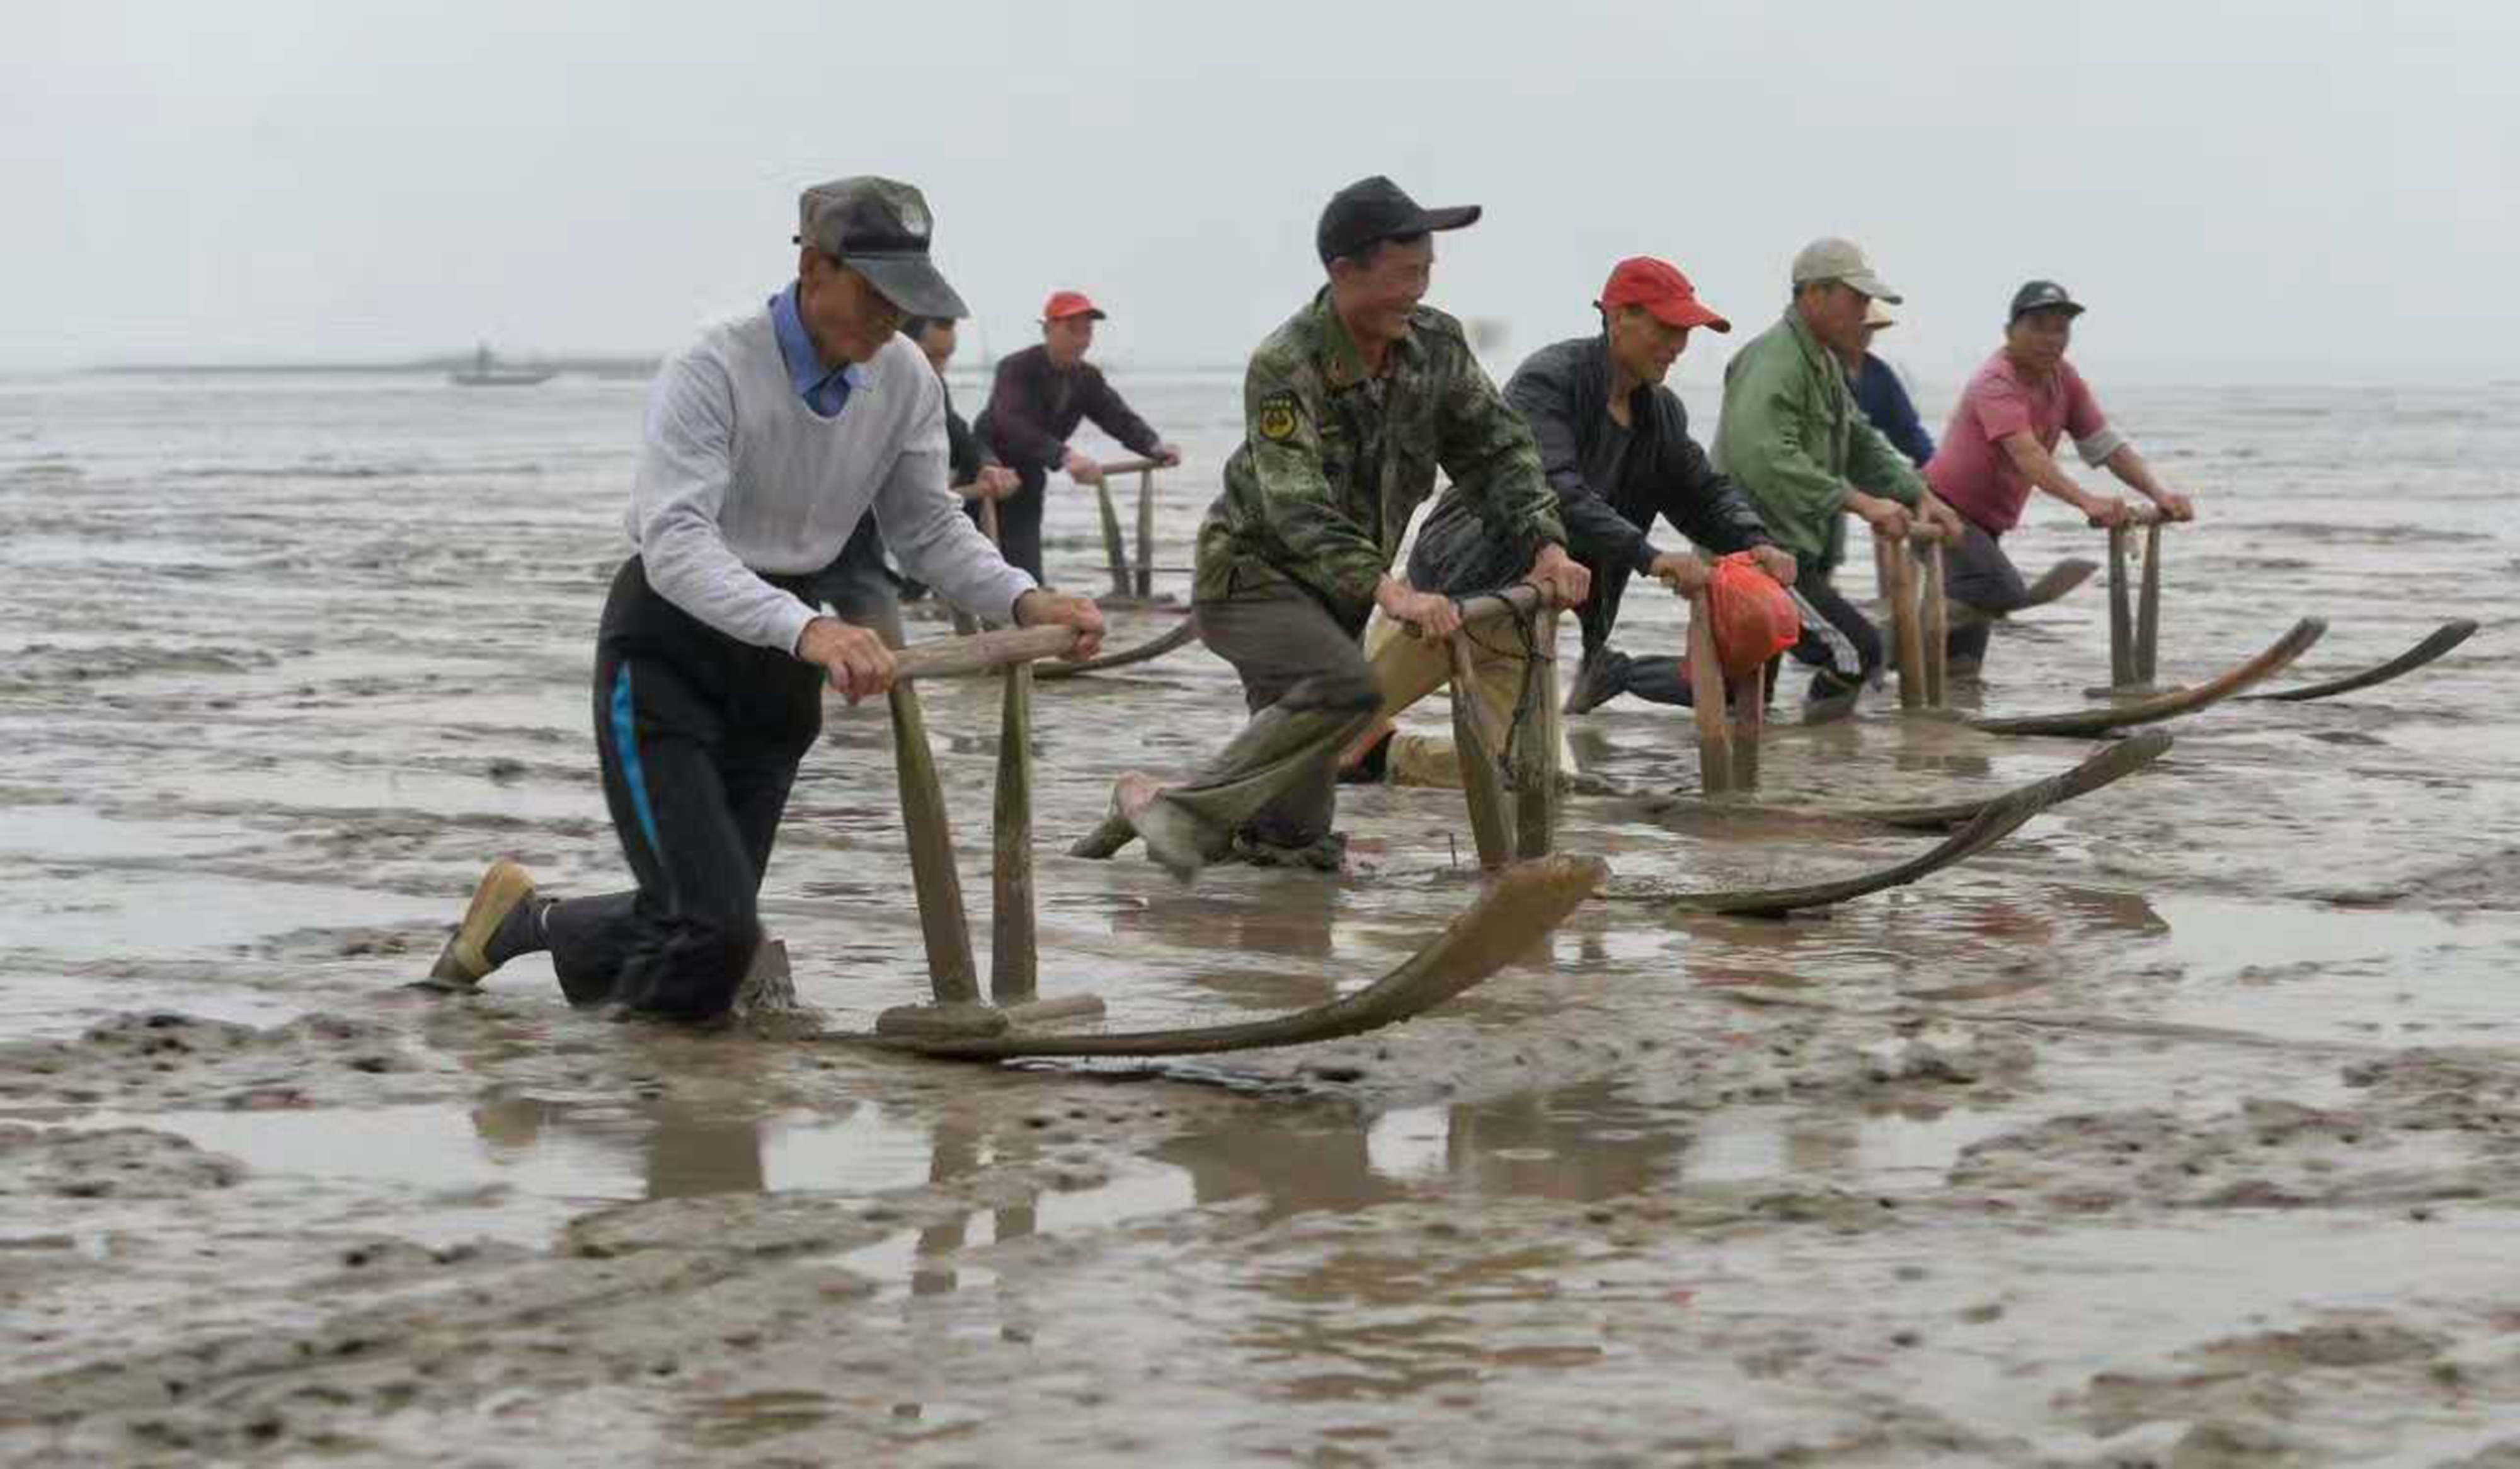 连江县马鼻镇的沿海滩涂边，渔民们跪在板上，右腿蹬地，在滩涂上快速滑行 (1).jpg